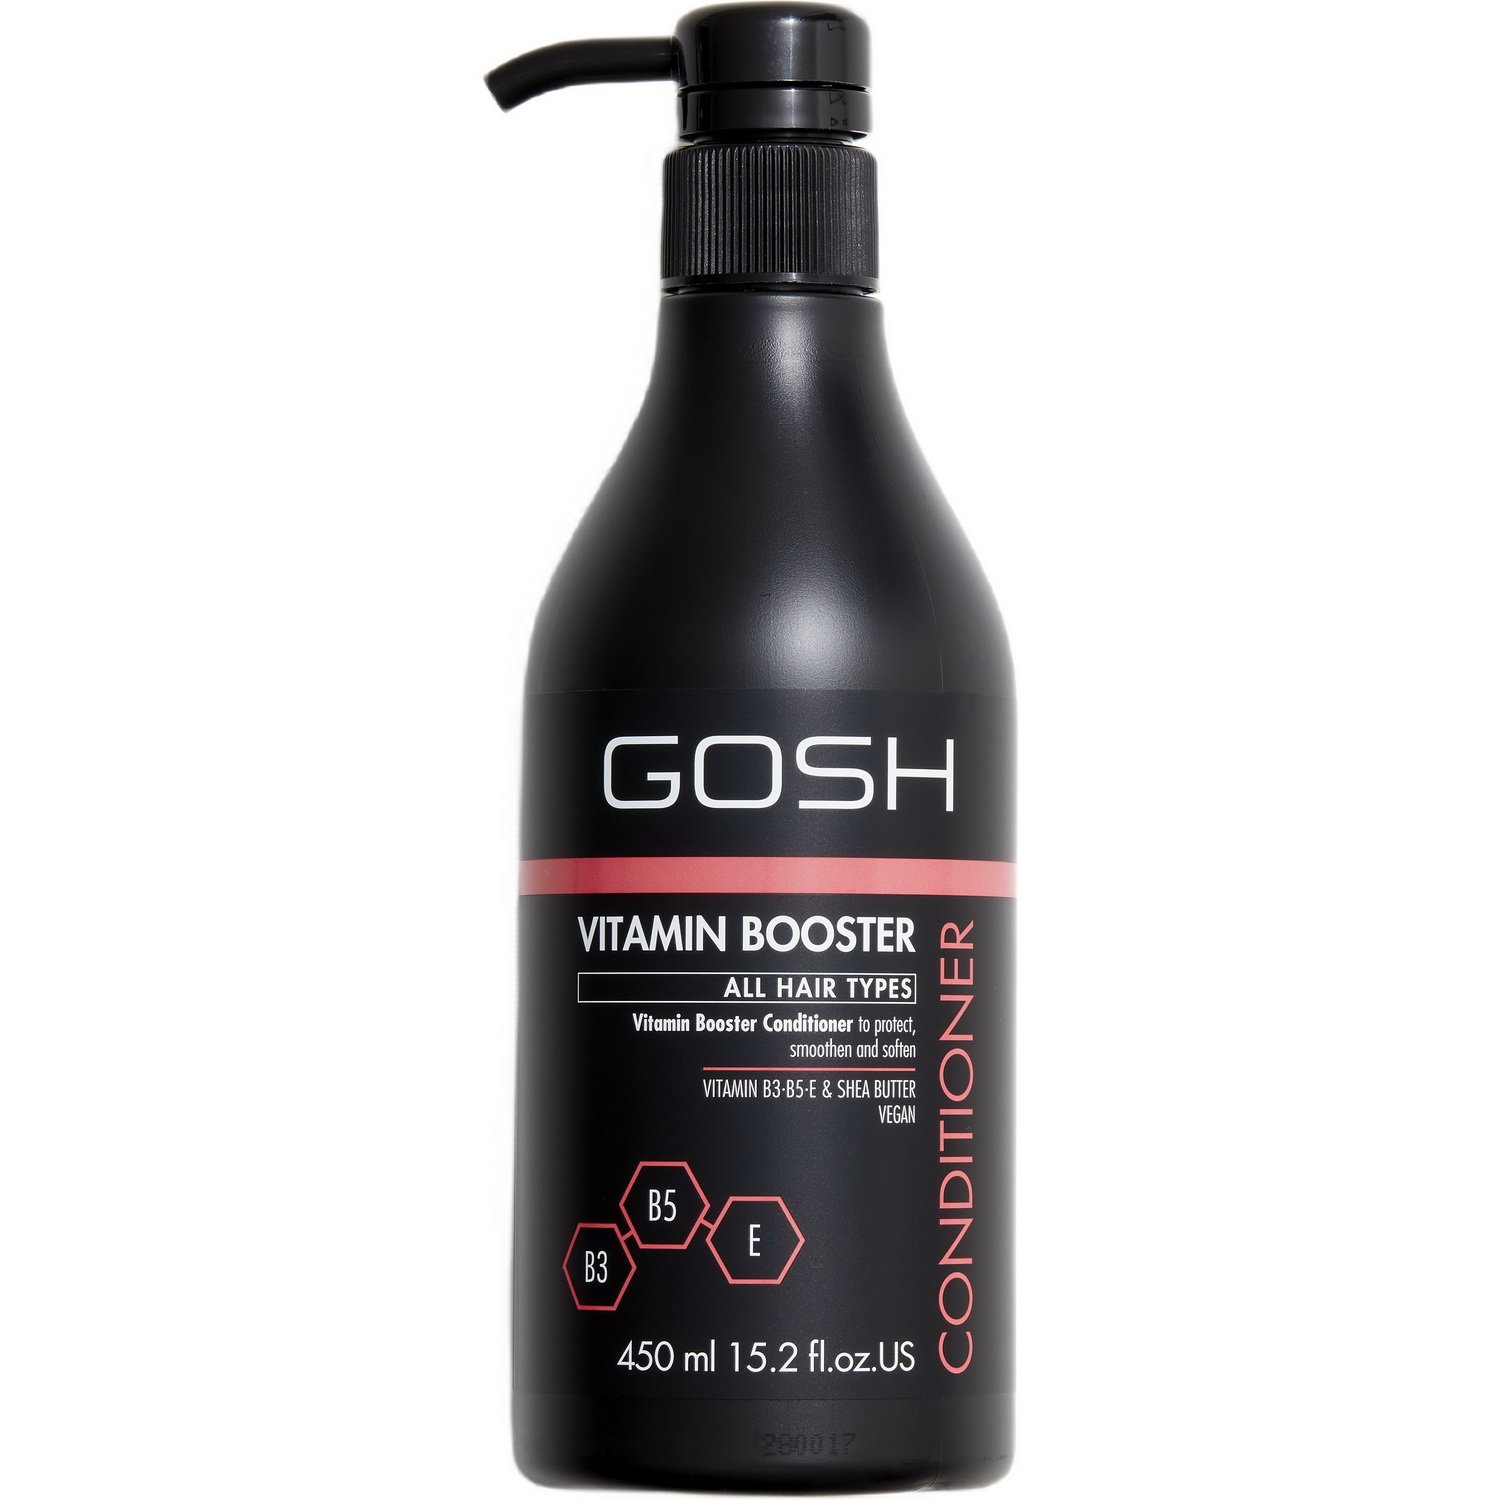 Кондиционер для волос Gosh Vitamin Booster, с витаминным комплексом, 450 мл - фото 1